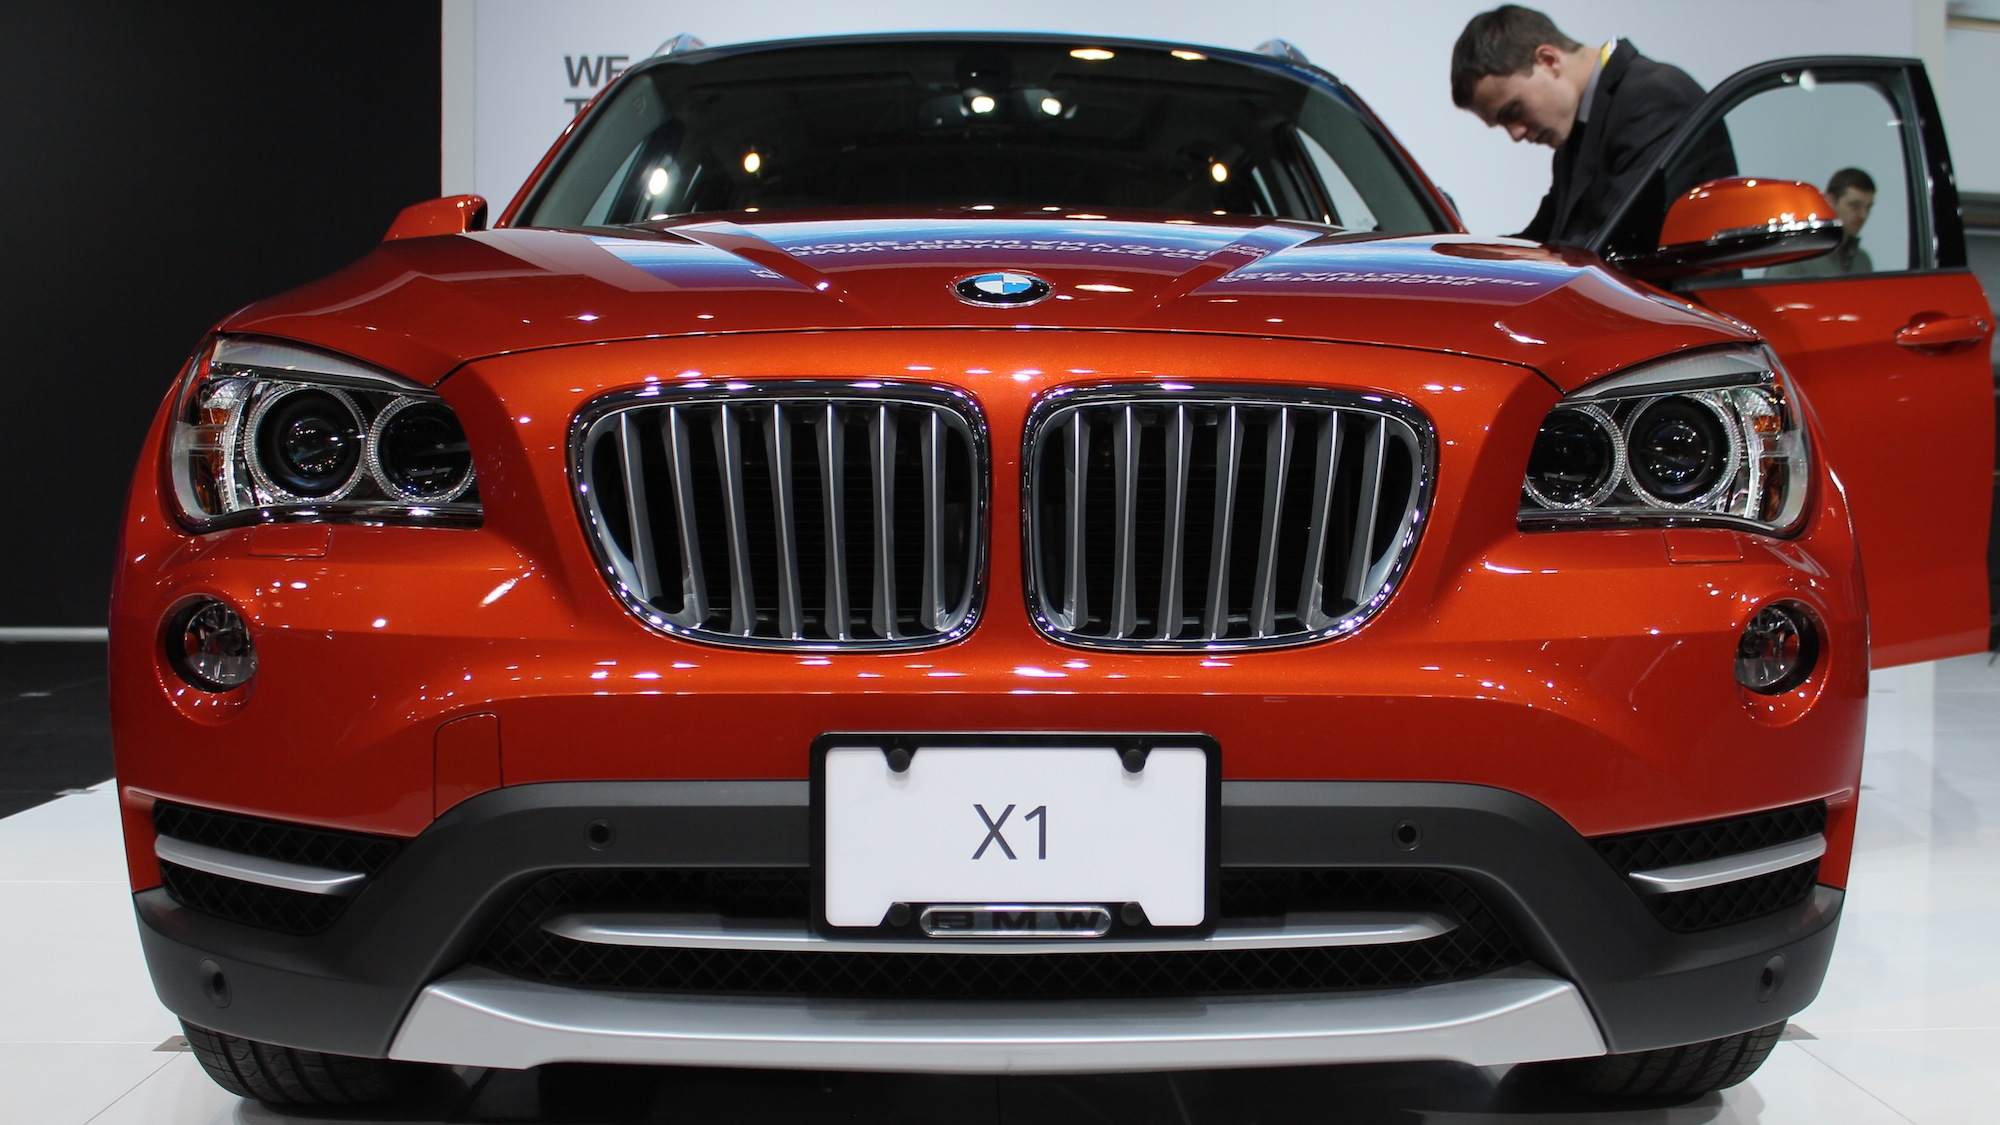 2013 BMW X1, 2012 New York Auto Show